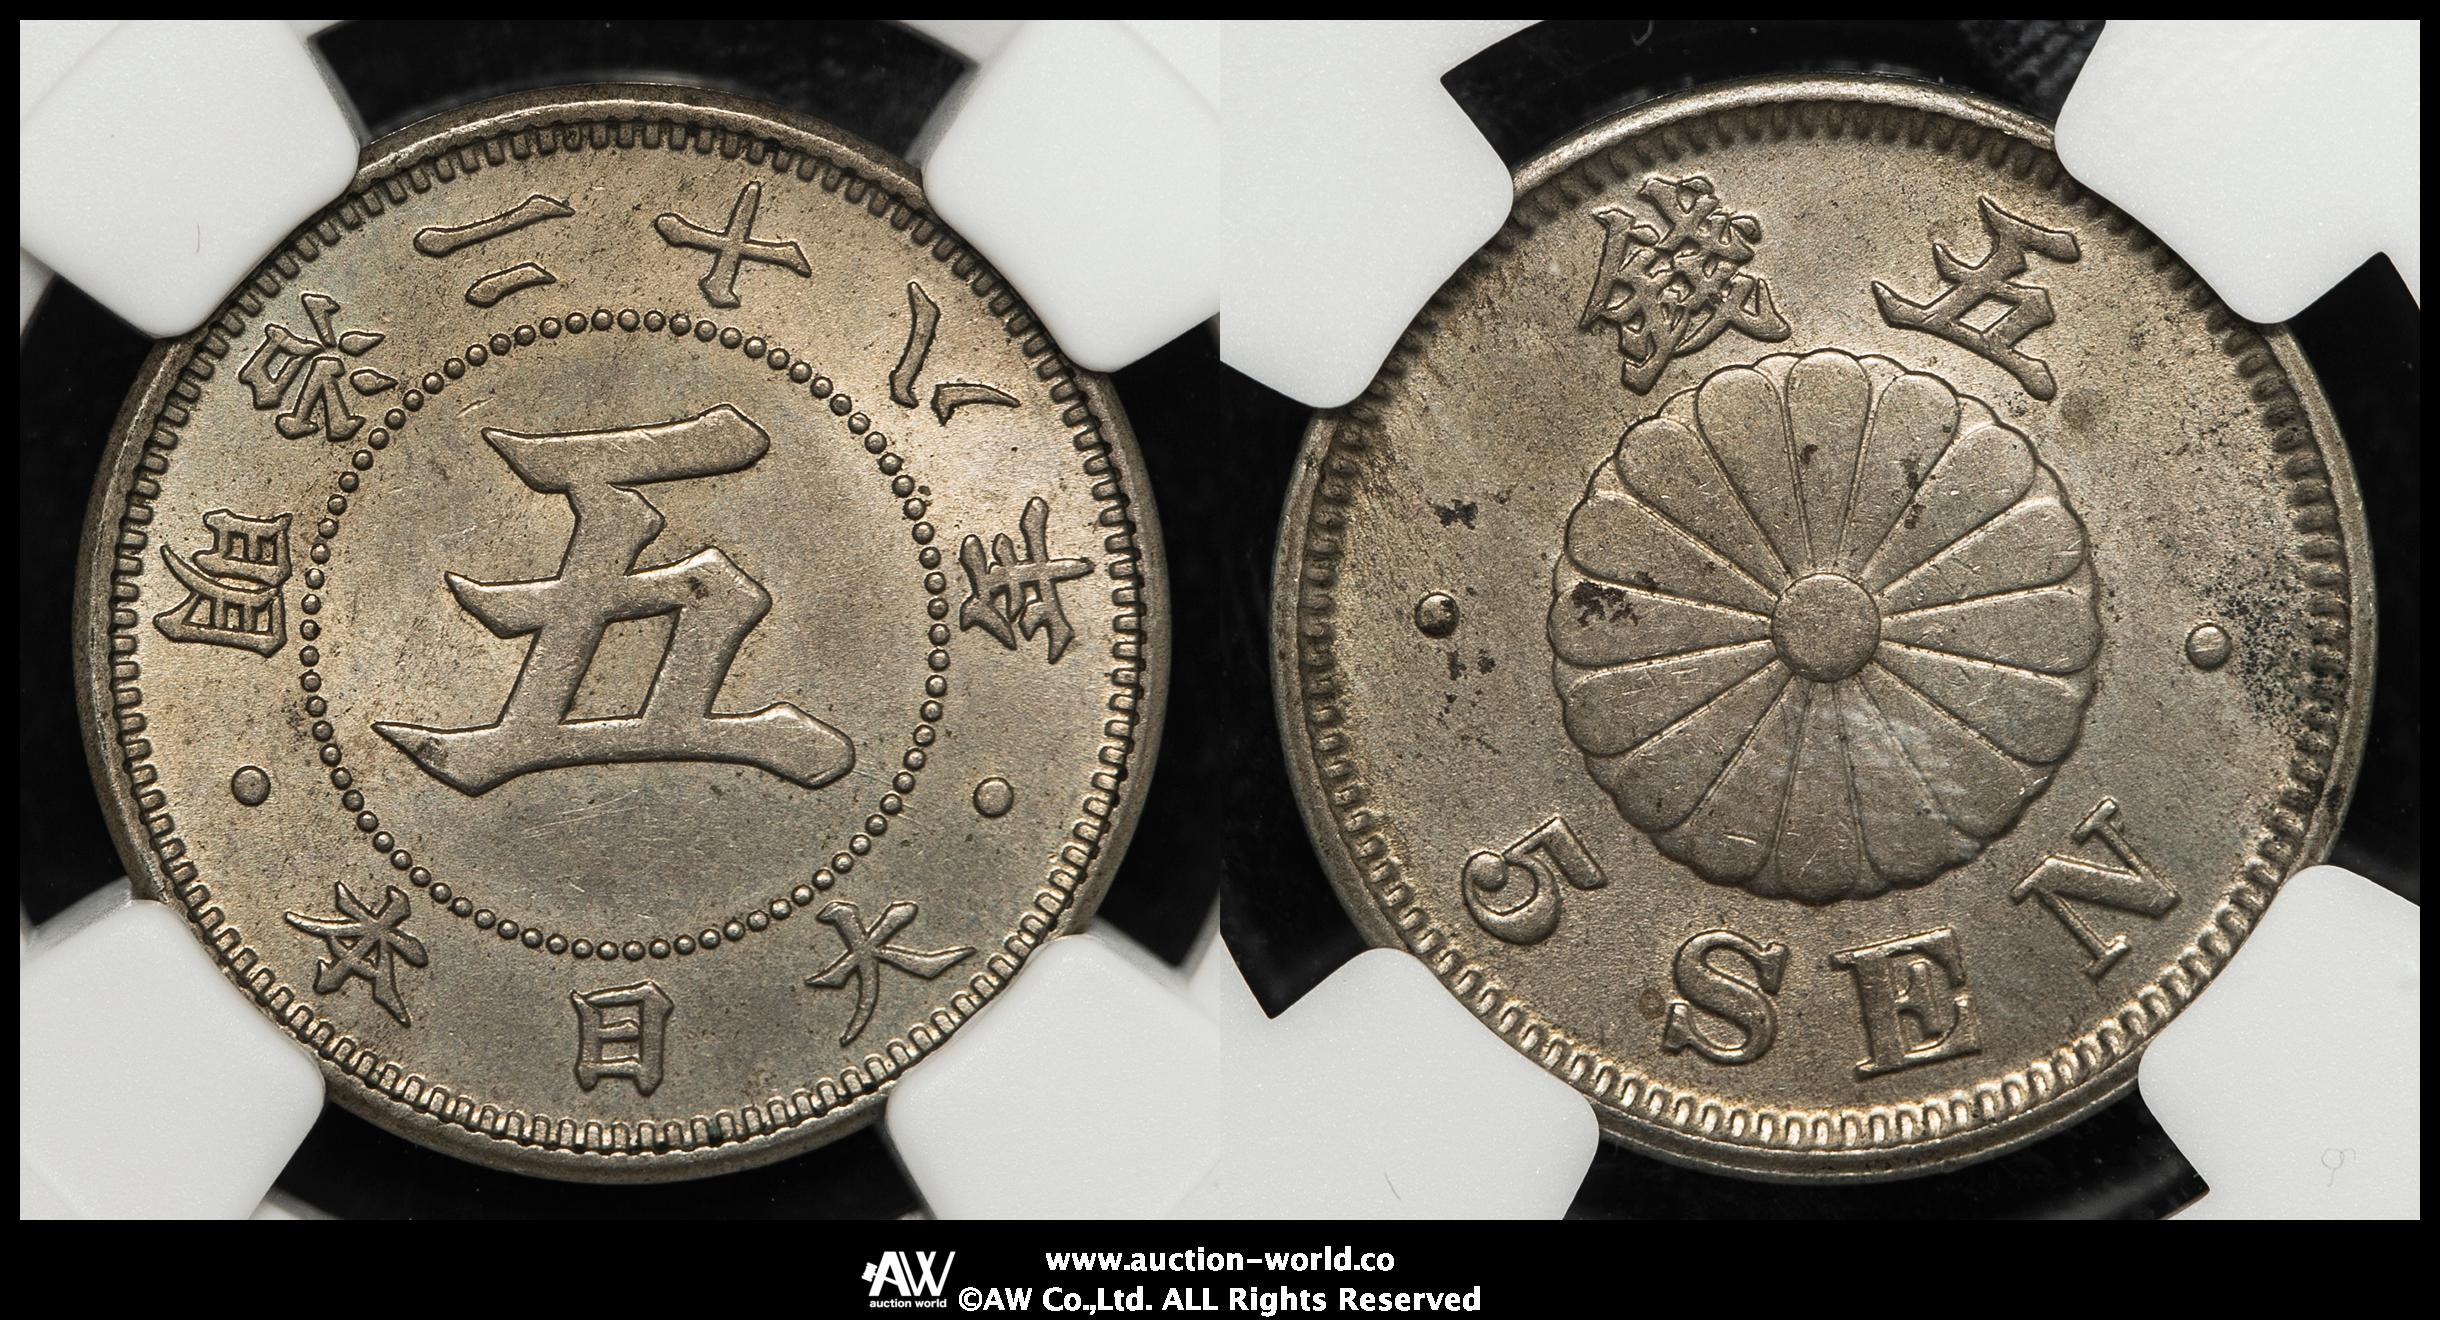 827 日本・ニュージーランド友好 プルーフ貨幣セット 2007年 平成19年 記念硬貨 日本 造幣局 コレクション コレクター 送料無料